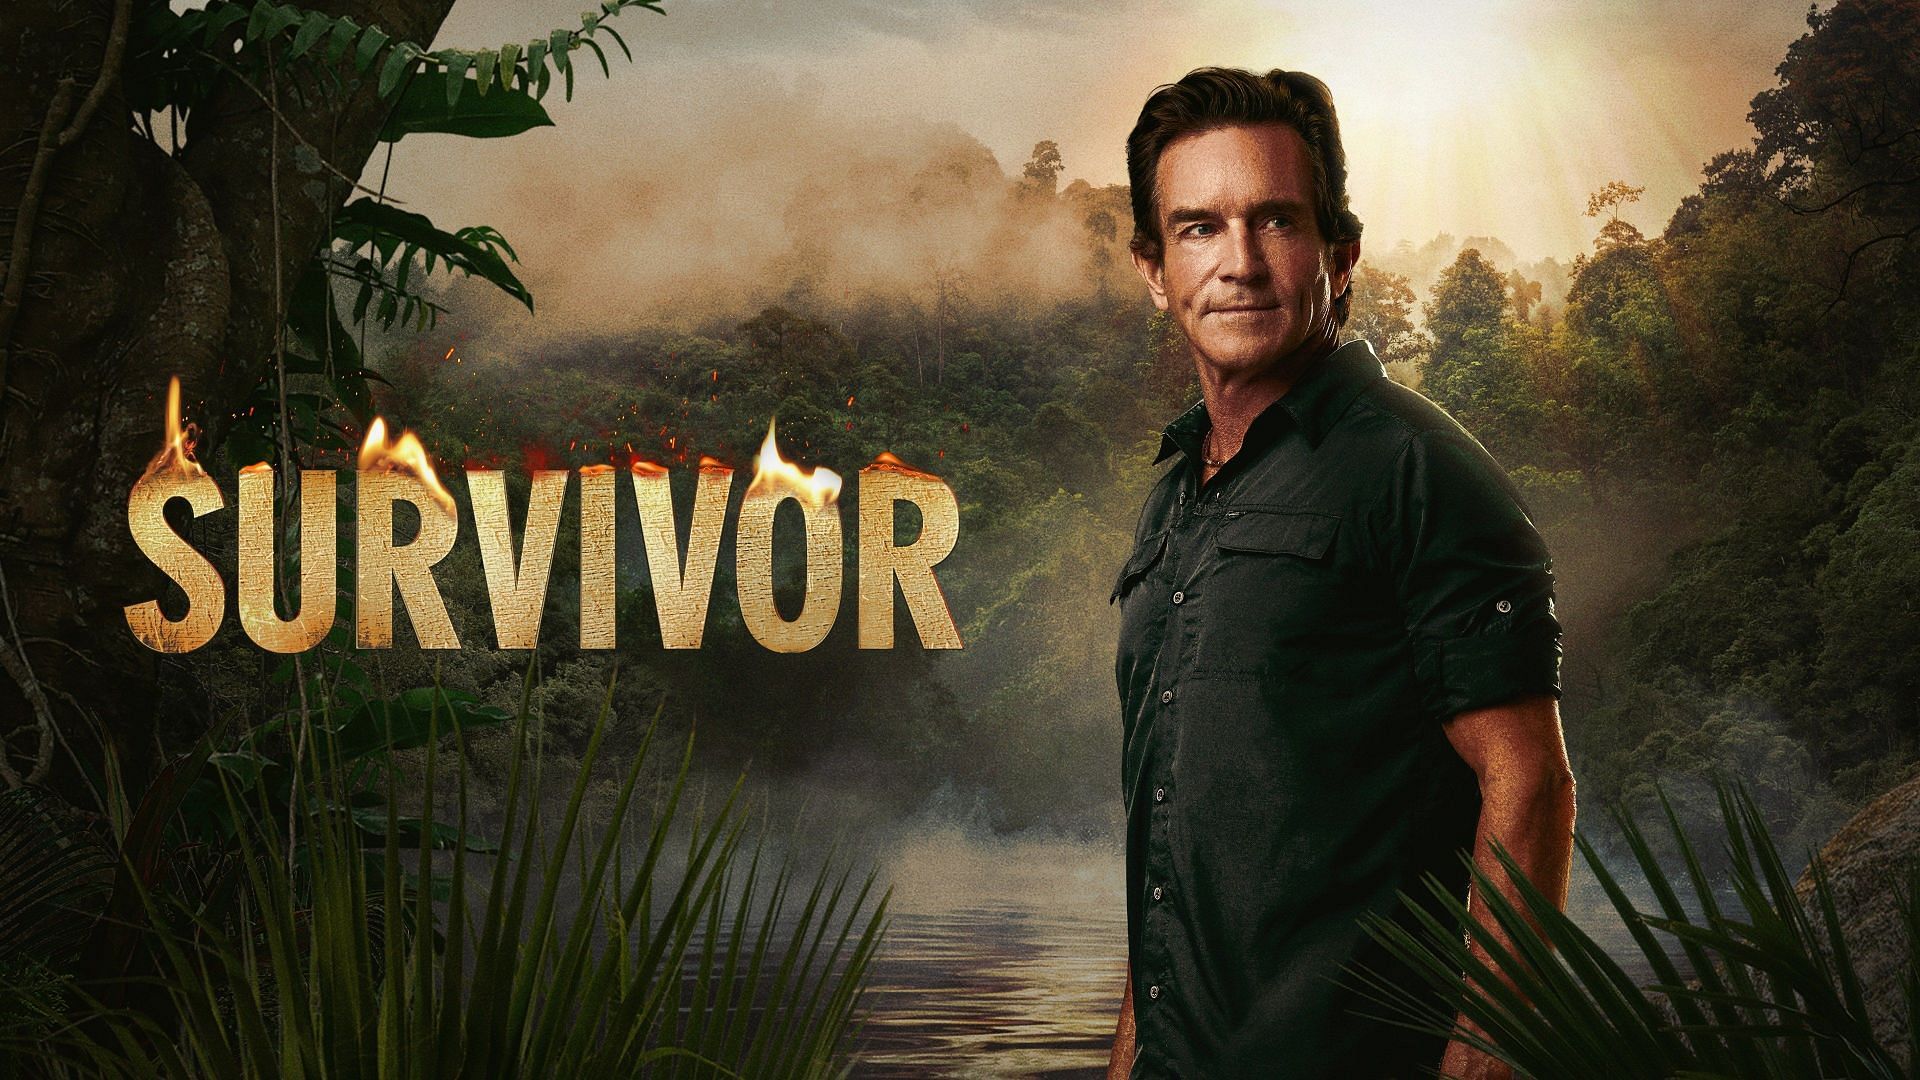 Survivor (Image via CBS)